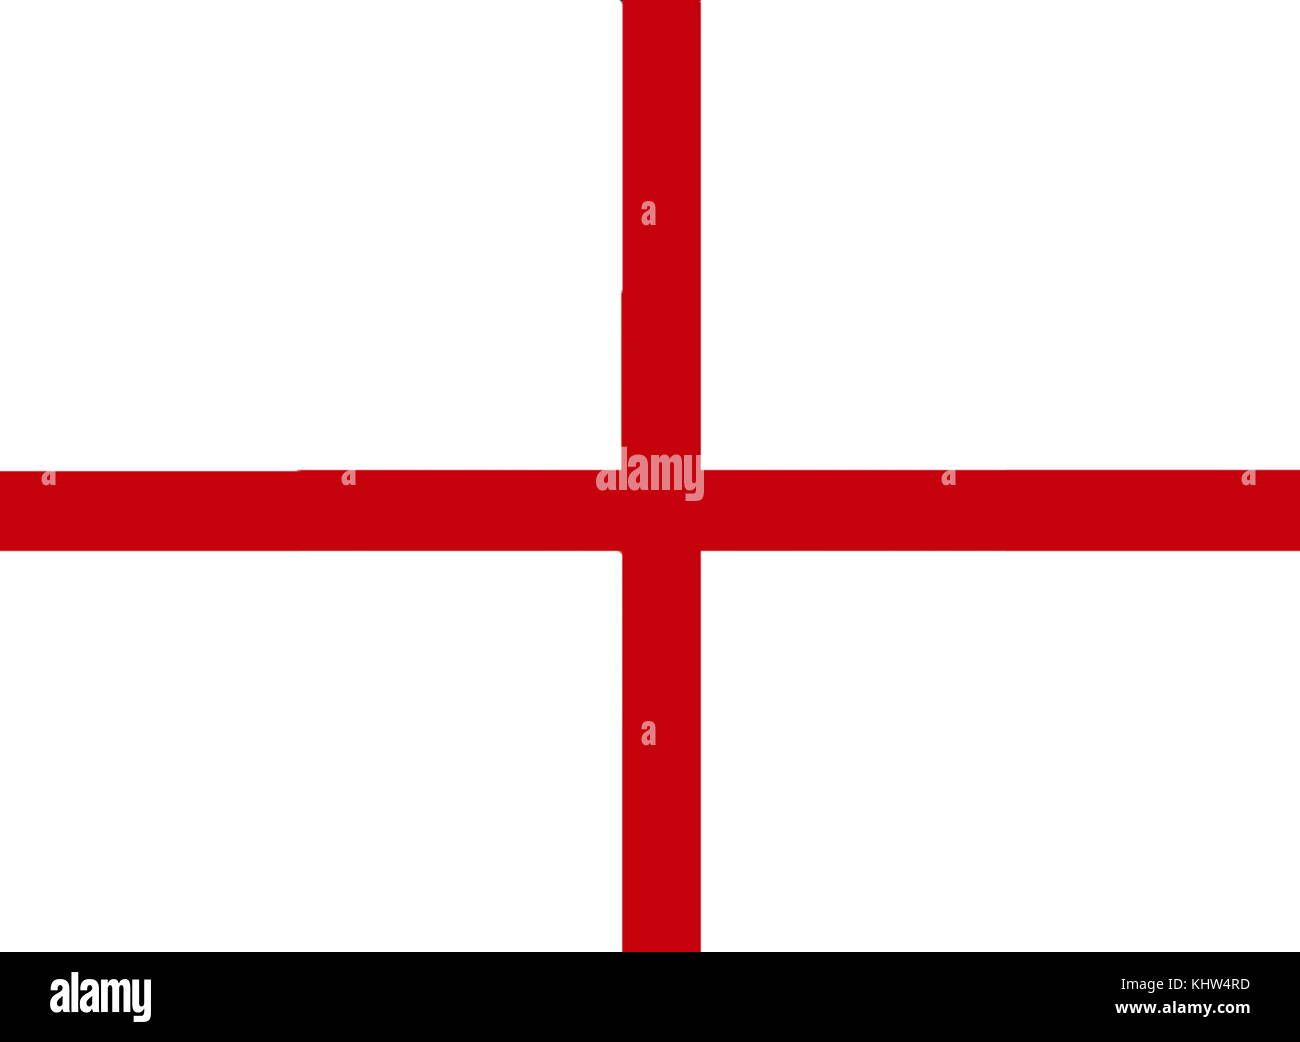 Illustration représentant le drapeau de l'Angleterre dérivée de la croix de Saint-Georges. L'association de la croix rouge comme emblème de l'Angleterre remonte au Moyen Âge. En date du 20e siècle Banque D'Images